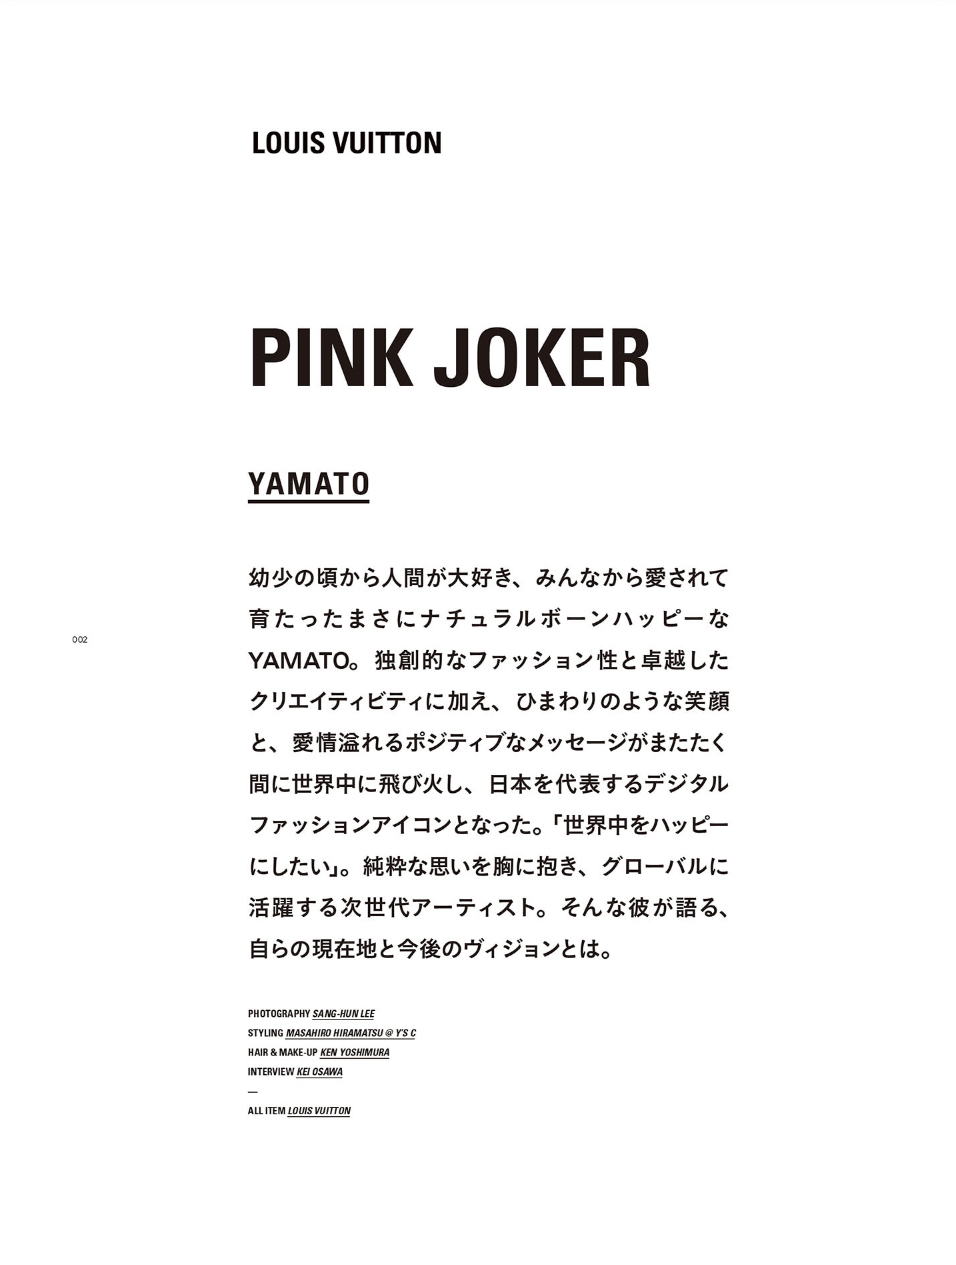 HIGHSNOBIETY Japan  –  YAMATO  ×  LOUIS VUITTON  KEN YOSHIMURA HAIR